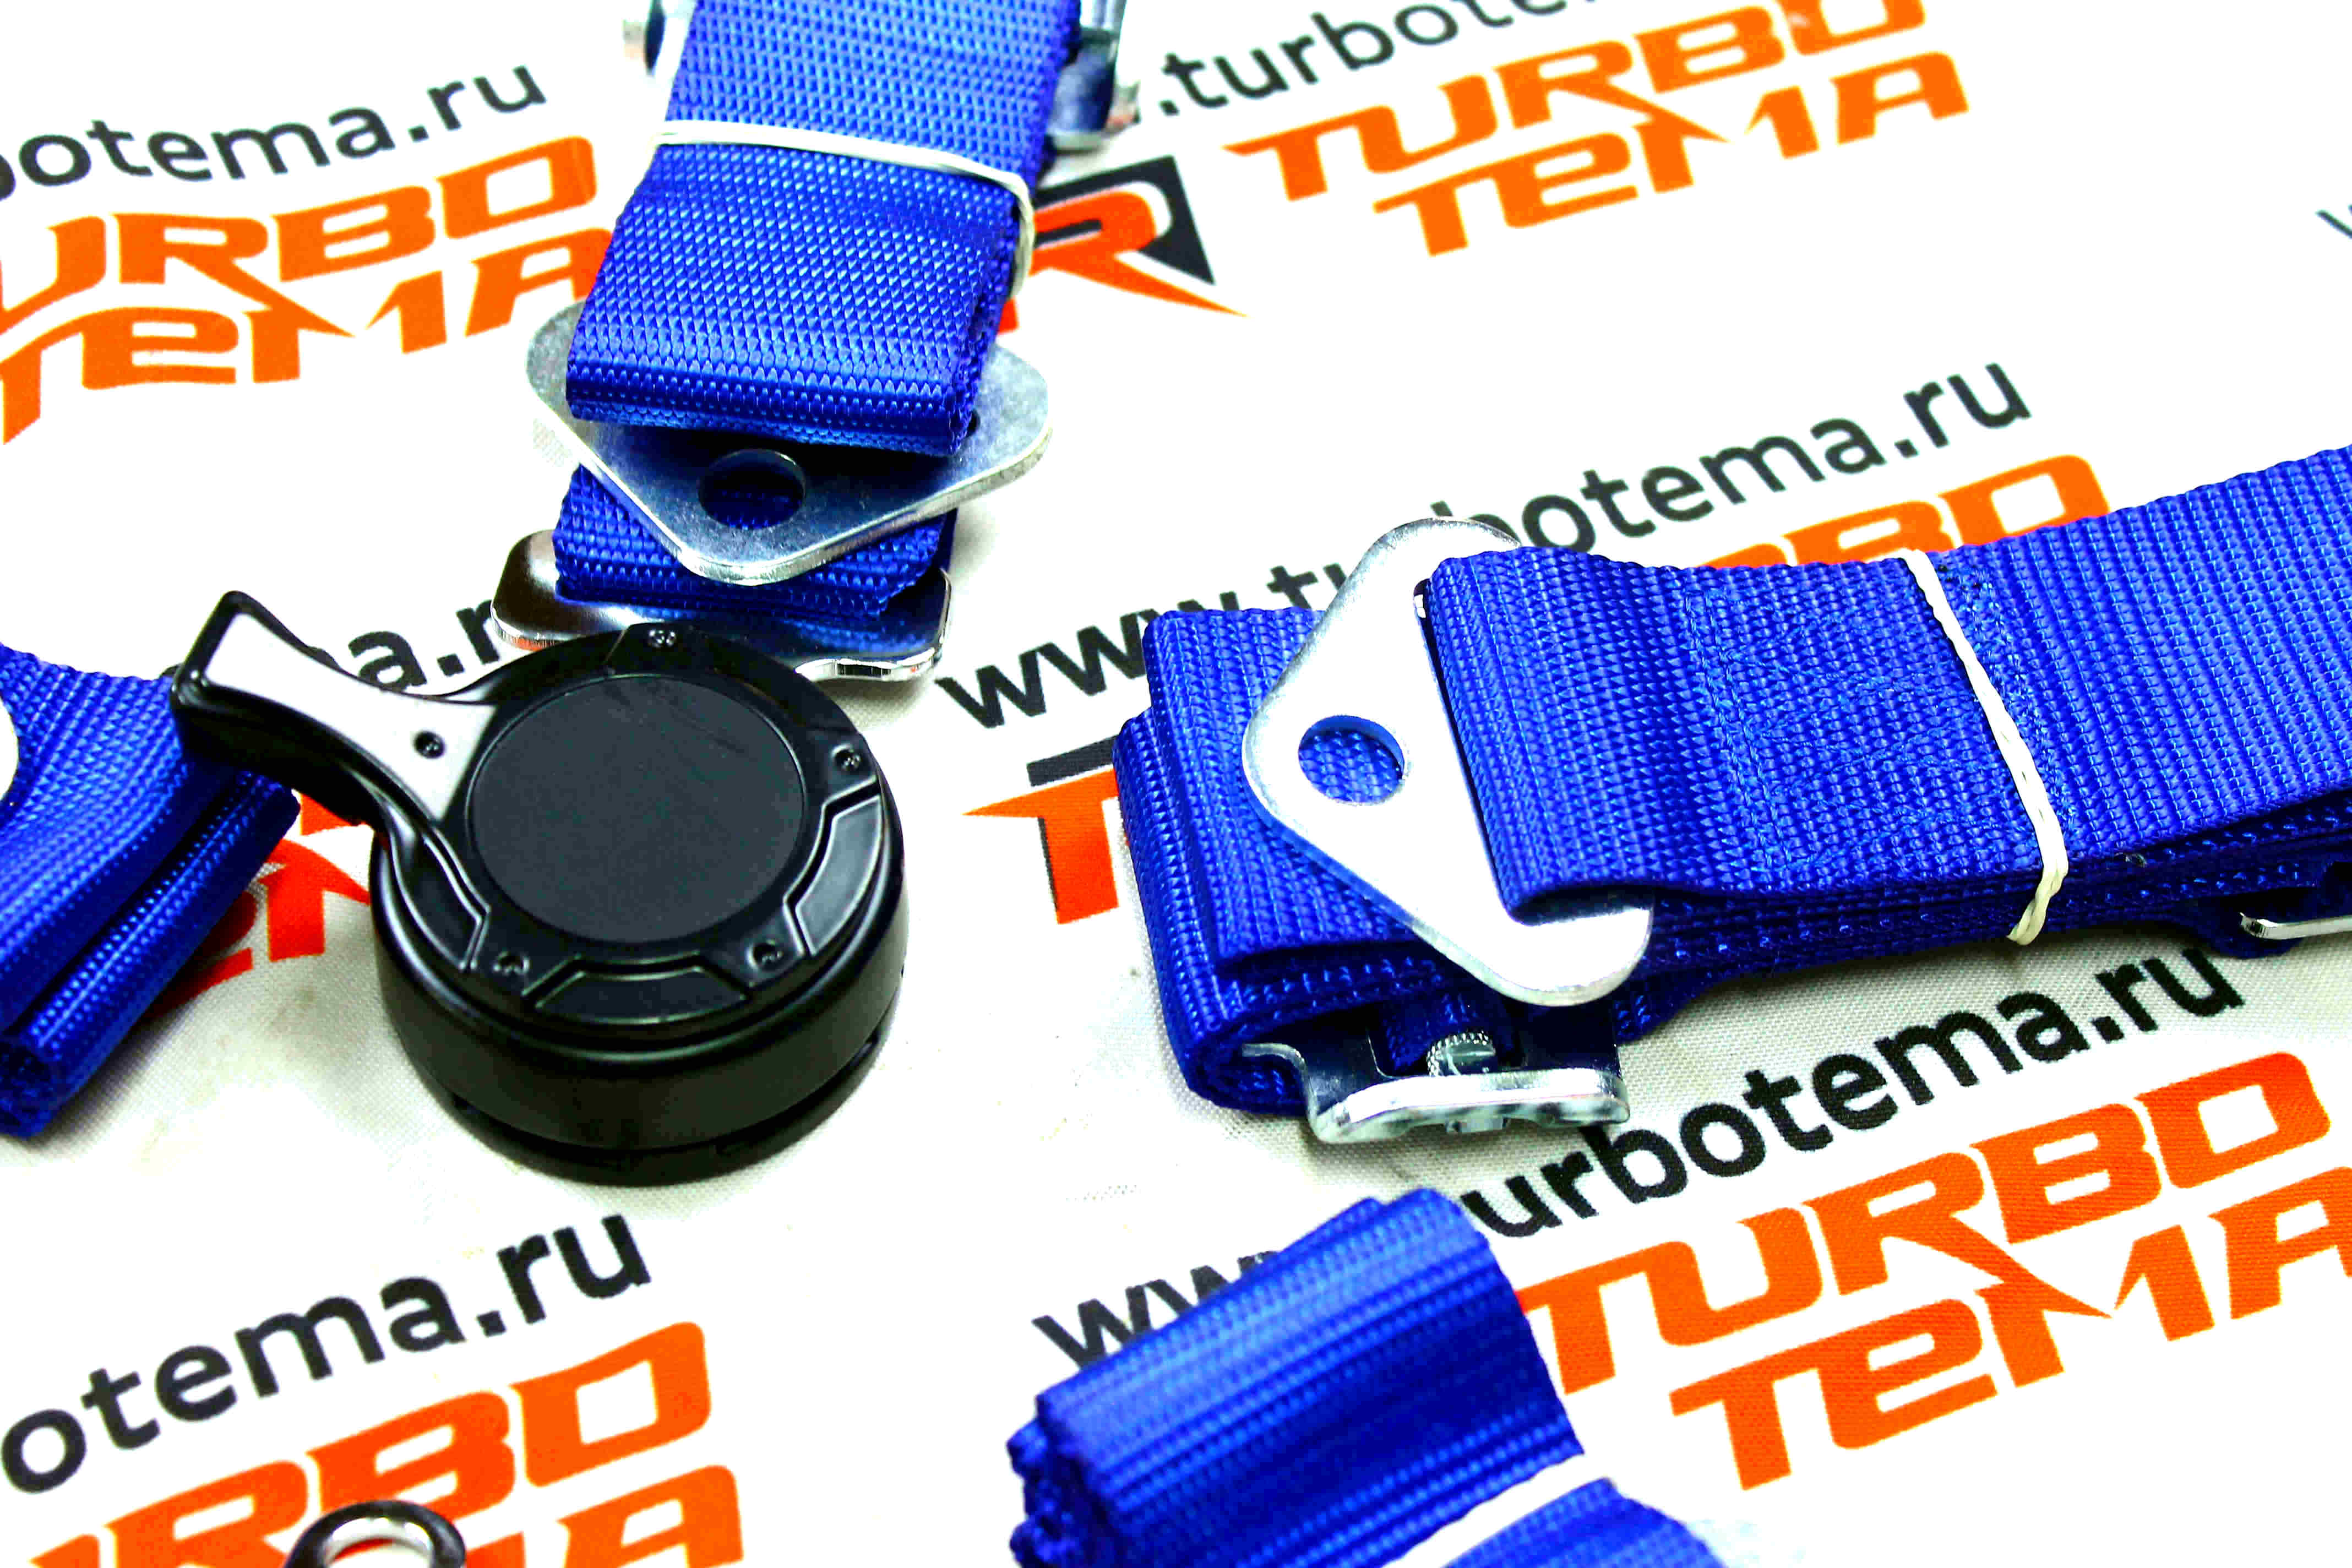 Ремни безопасности "TURBOTEMA" 6-х точечные, 2" ширина, быстросъемные (синие) JBR4001-6. Фото �4